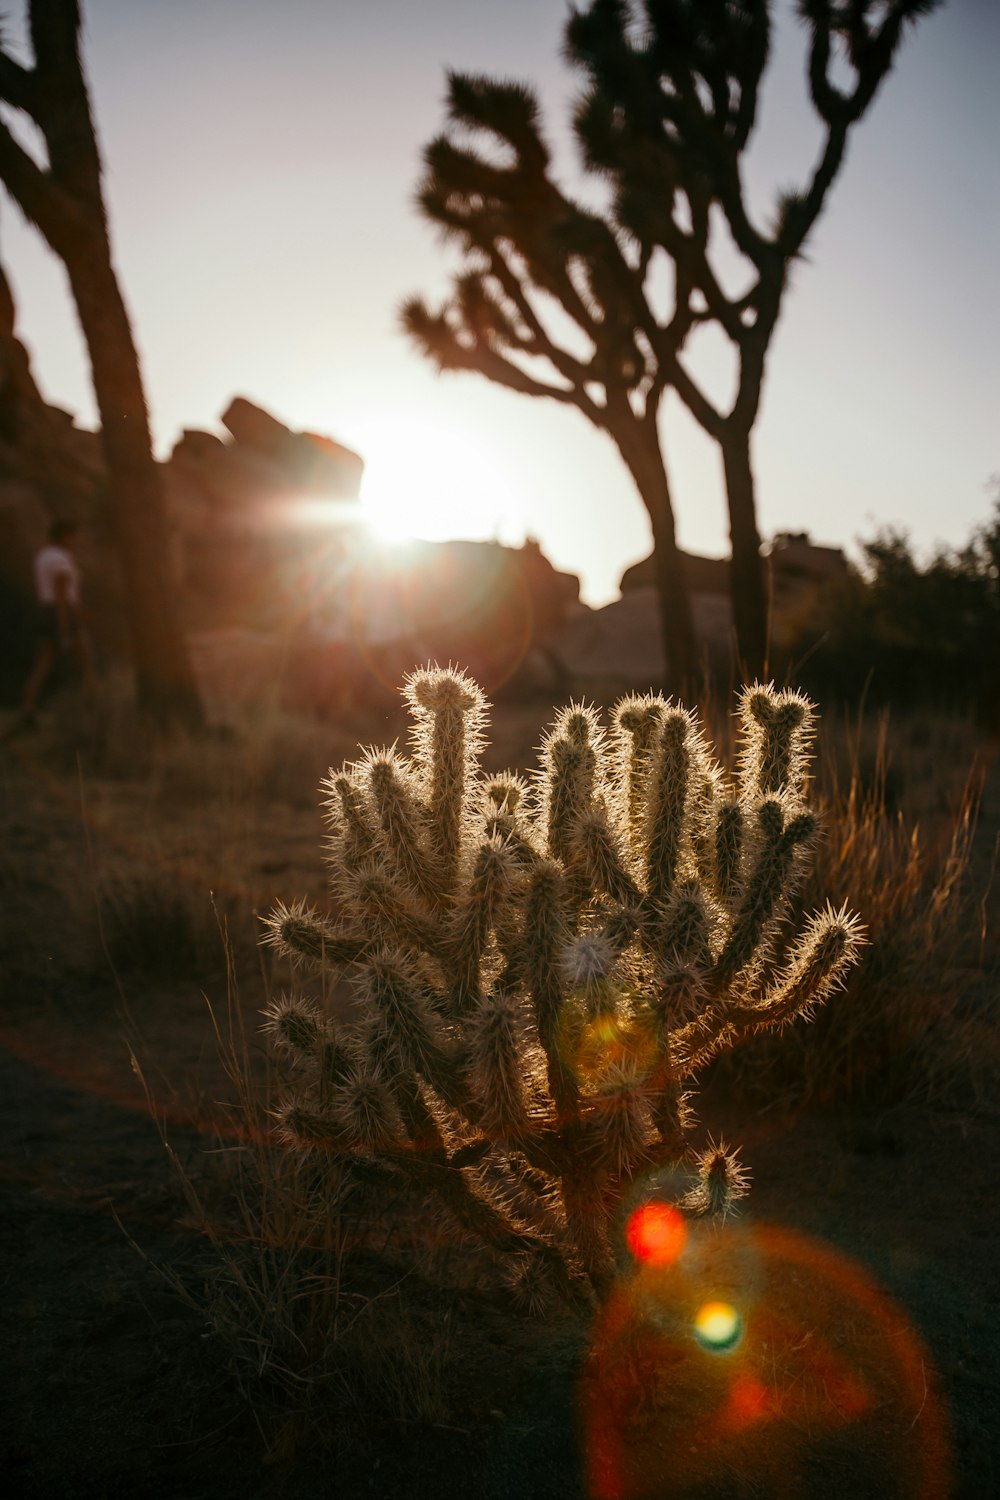 Cactus plant photo – Free Joshua tree national park Image on Unsplash